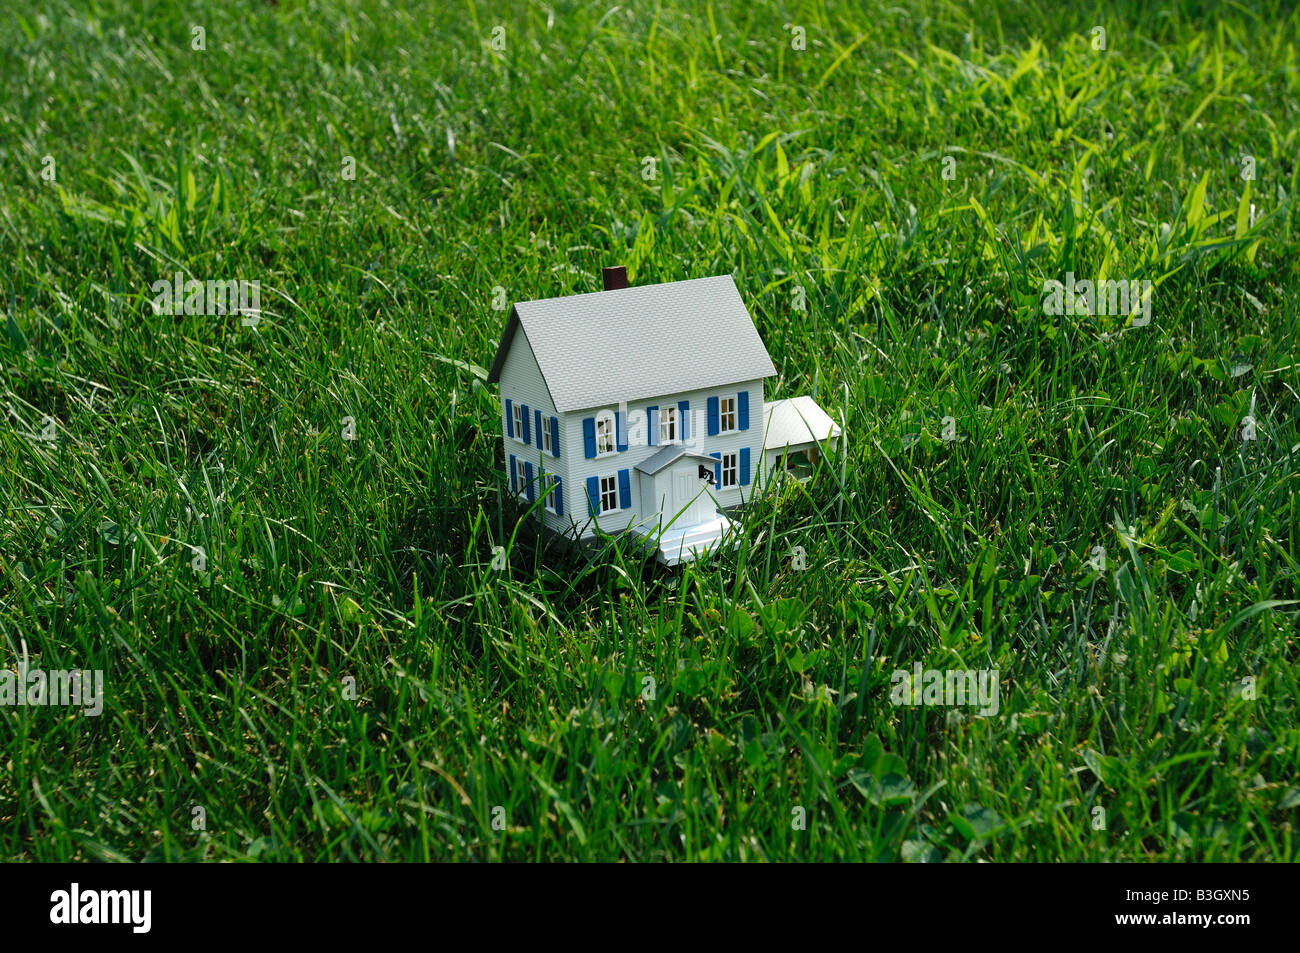 Modello di piccola casa in erba verde una piccola casa di plastica in vera erba verde Foto Stock